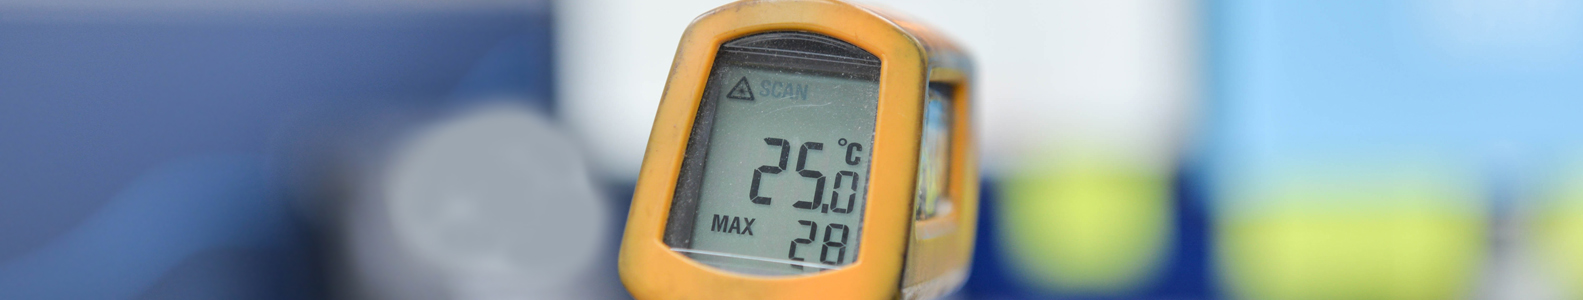 Temperatūros matavimo prietaisai 
Temperatūros matavimo prietaisai, skirti matuoti žmogaus kūno, oro, maisto, skysčių temperatūrą